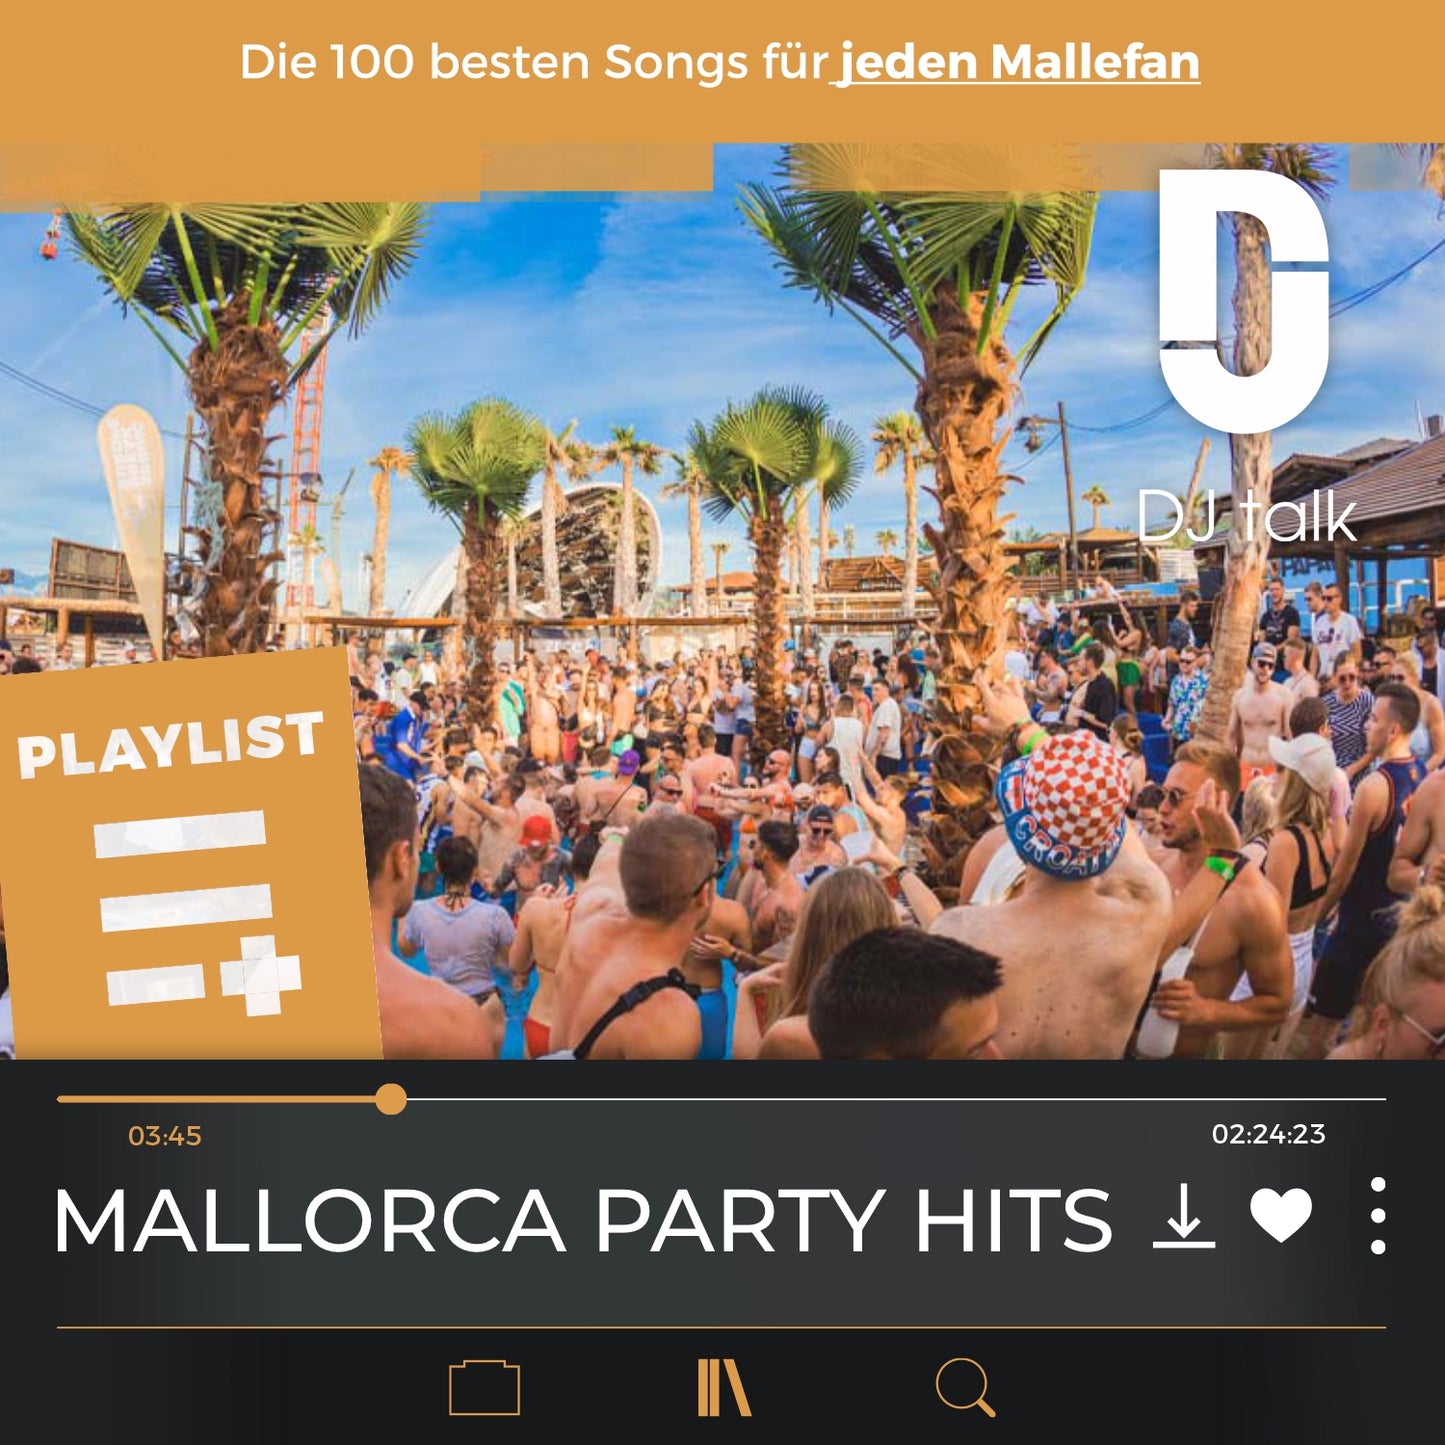 Malle Hits - die wichtigsten Songs die du als DJ haben musst!